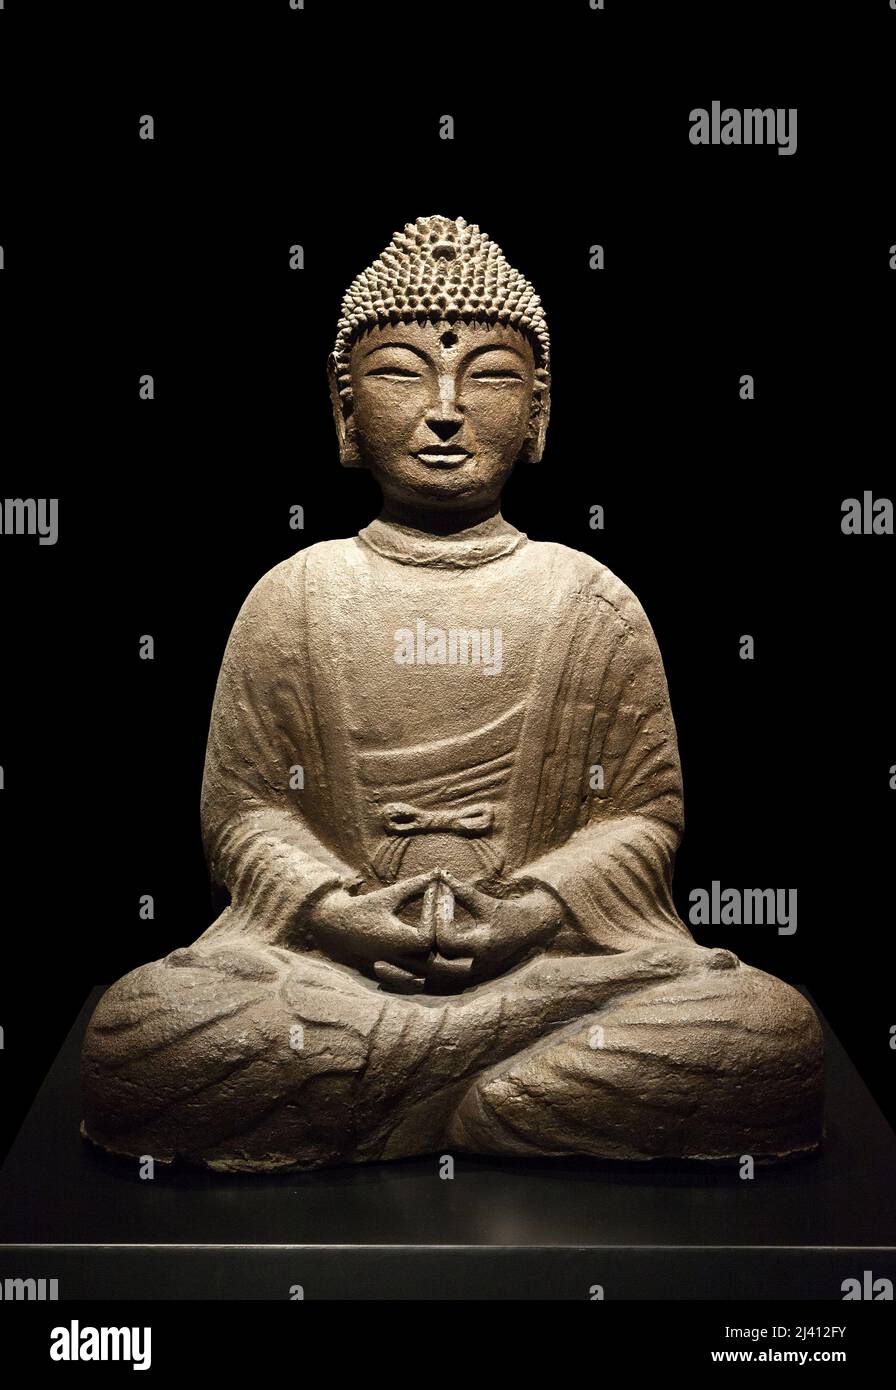 Bouddha Amitabha (Amida), regnant sur la Terre pure occidentale de la Seltitude, Sculpture en fonte, datant de l’epoque du royaume de Goryeo (918-1392). Musée national de Coree, Seoul, Coree du Sud. Stockfoto